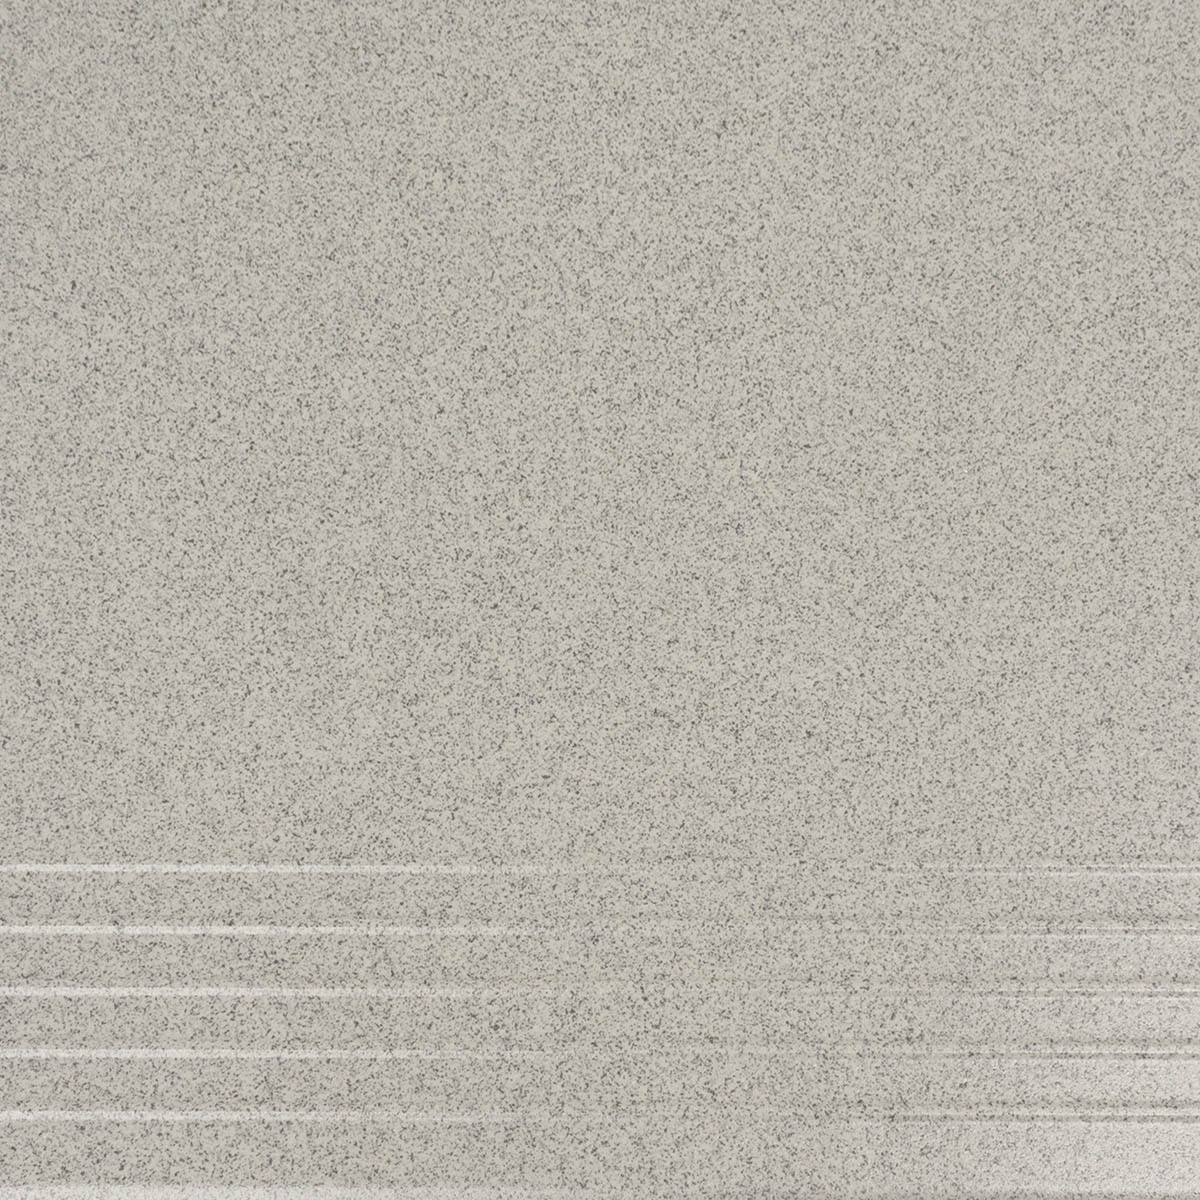 Плитка ступень с насечками ZVX18B 30x30 серая матовая 000001625 by Zeus Ceramica (Украина) color Серый